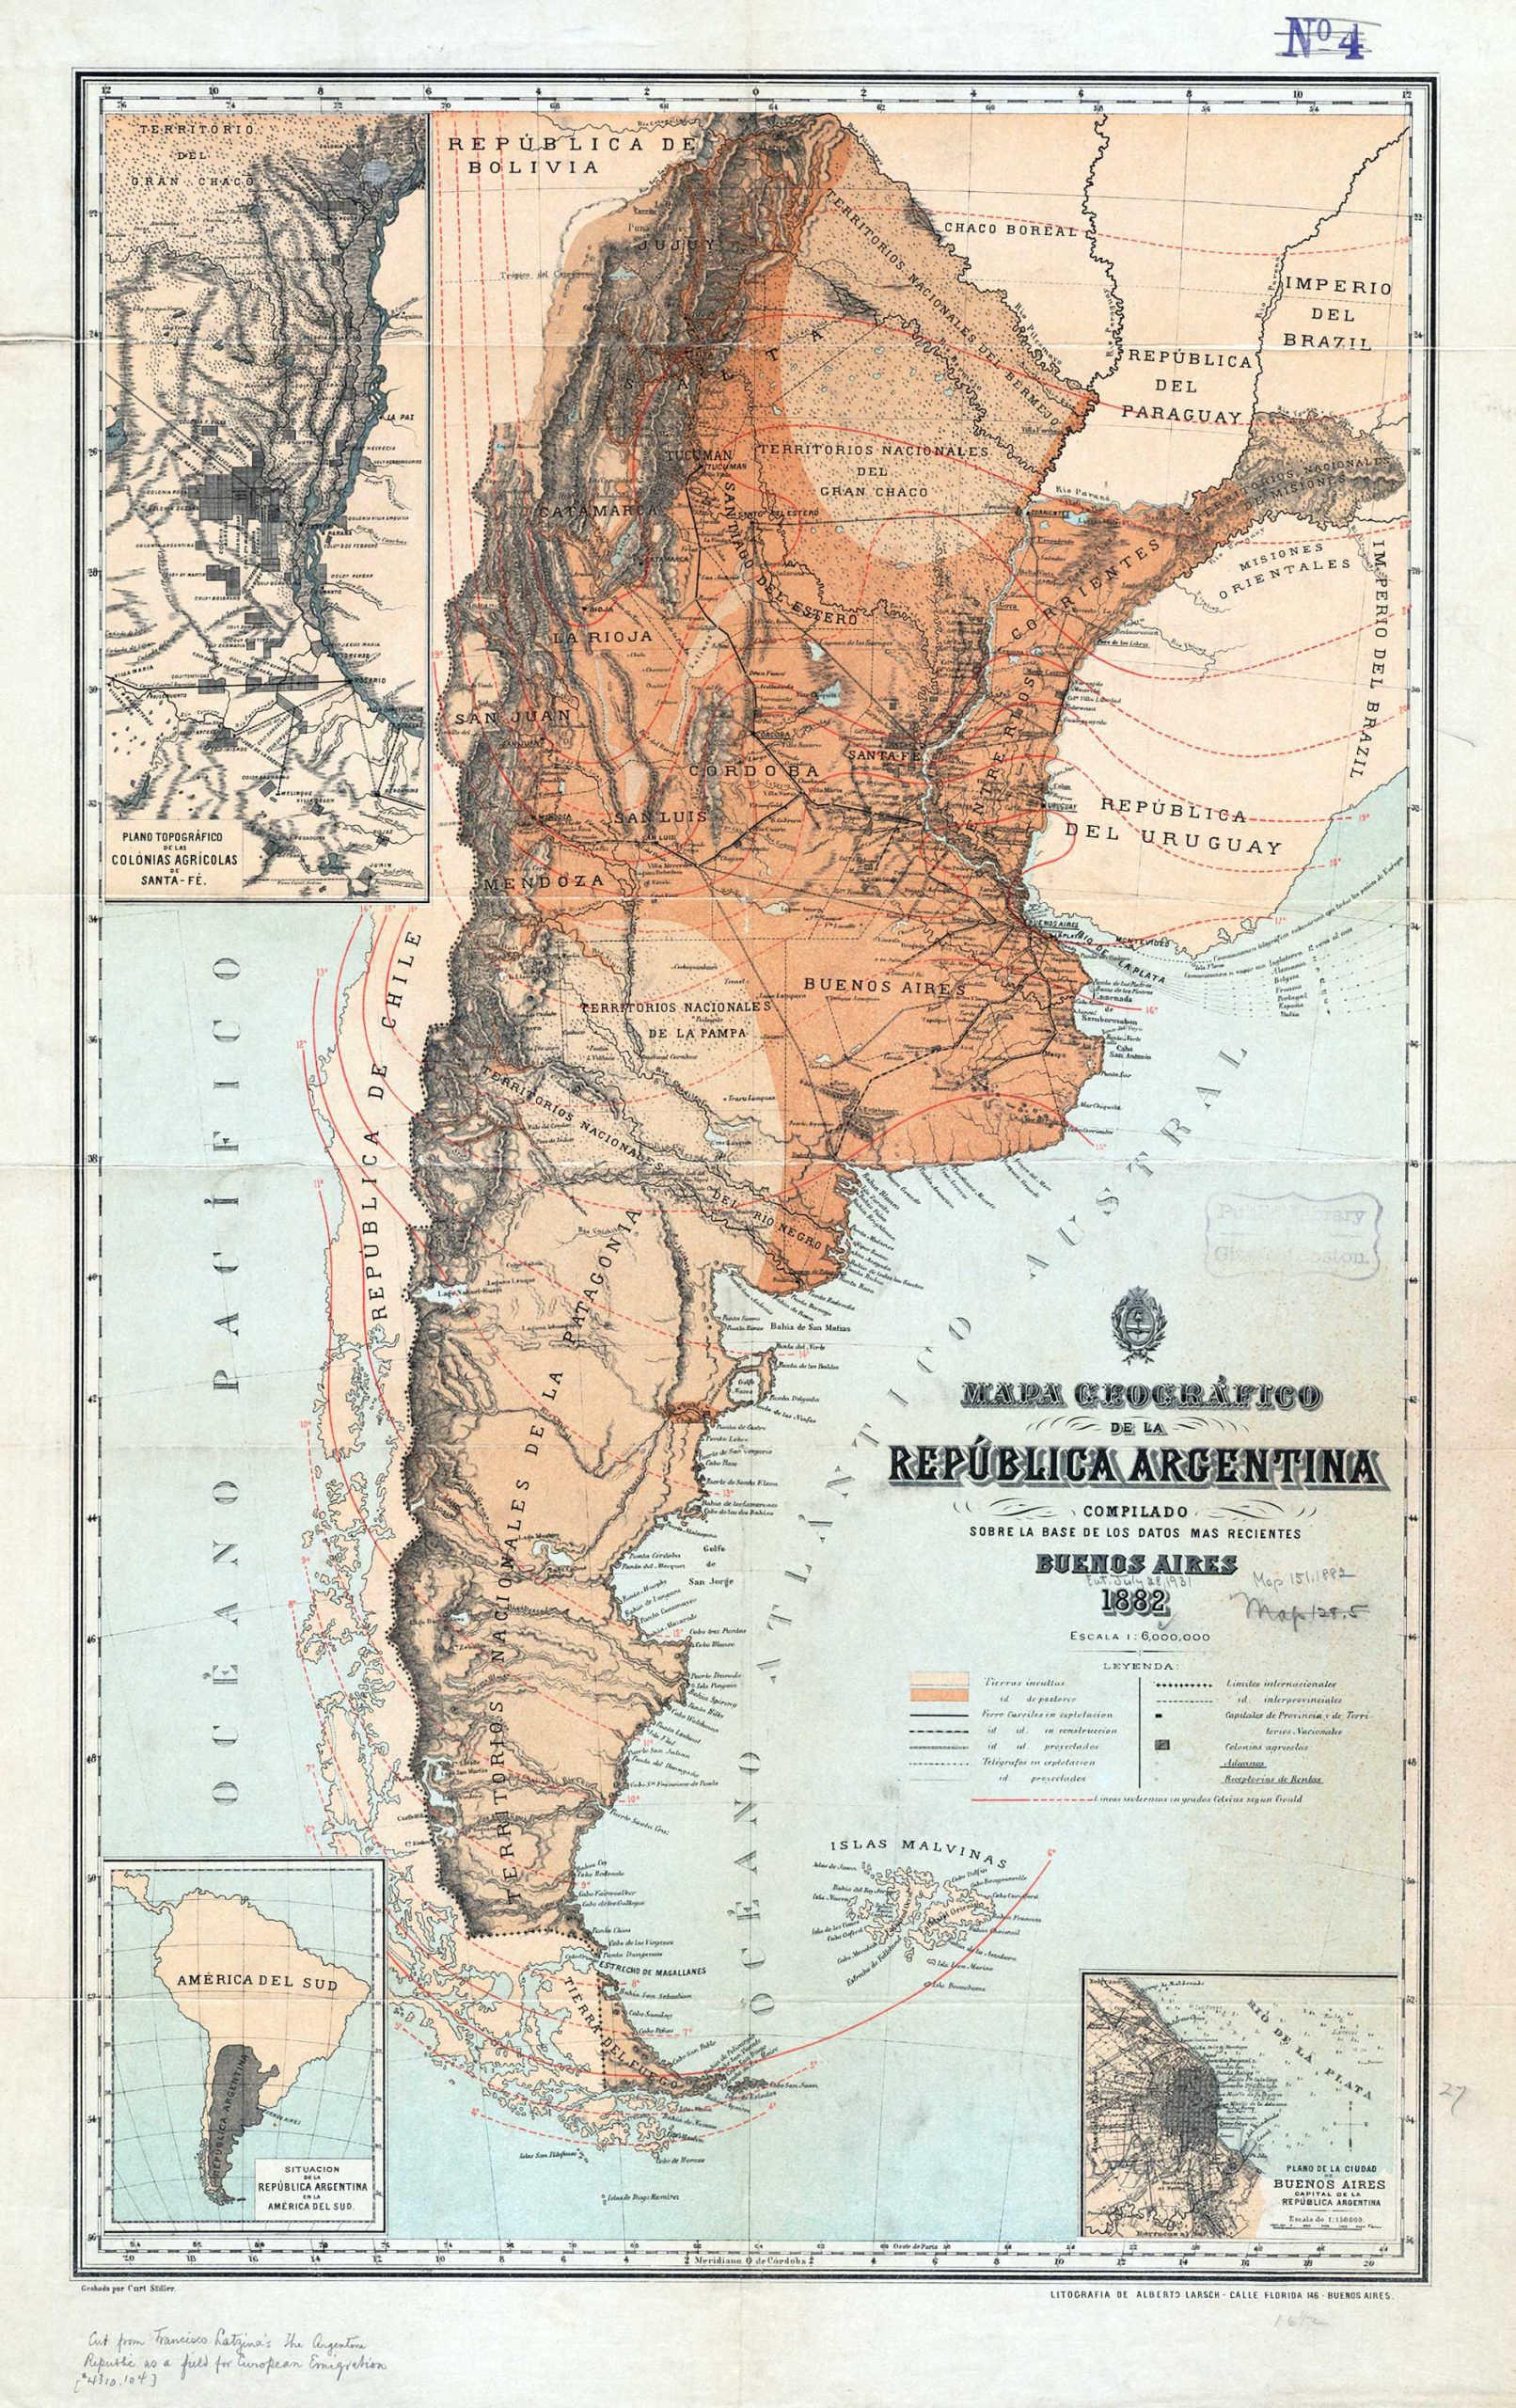 Argentina Historical Map (Francisco Latzina - 1882)